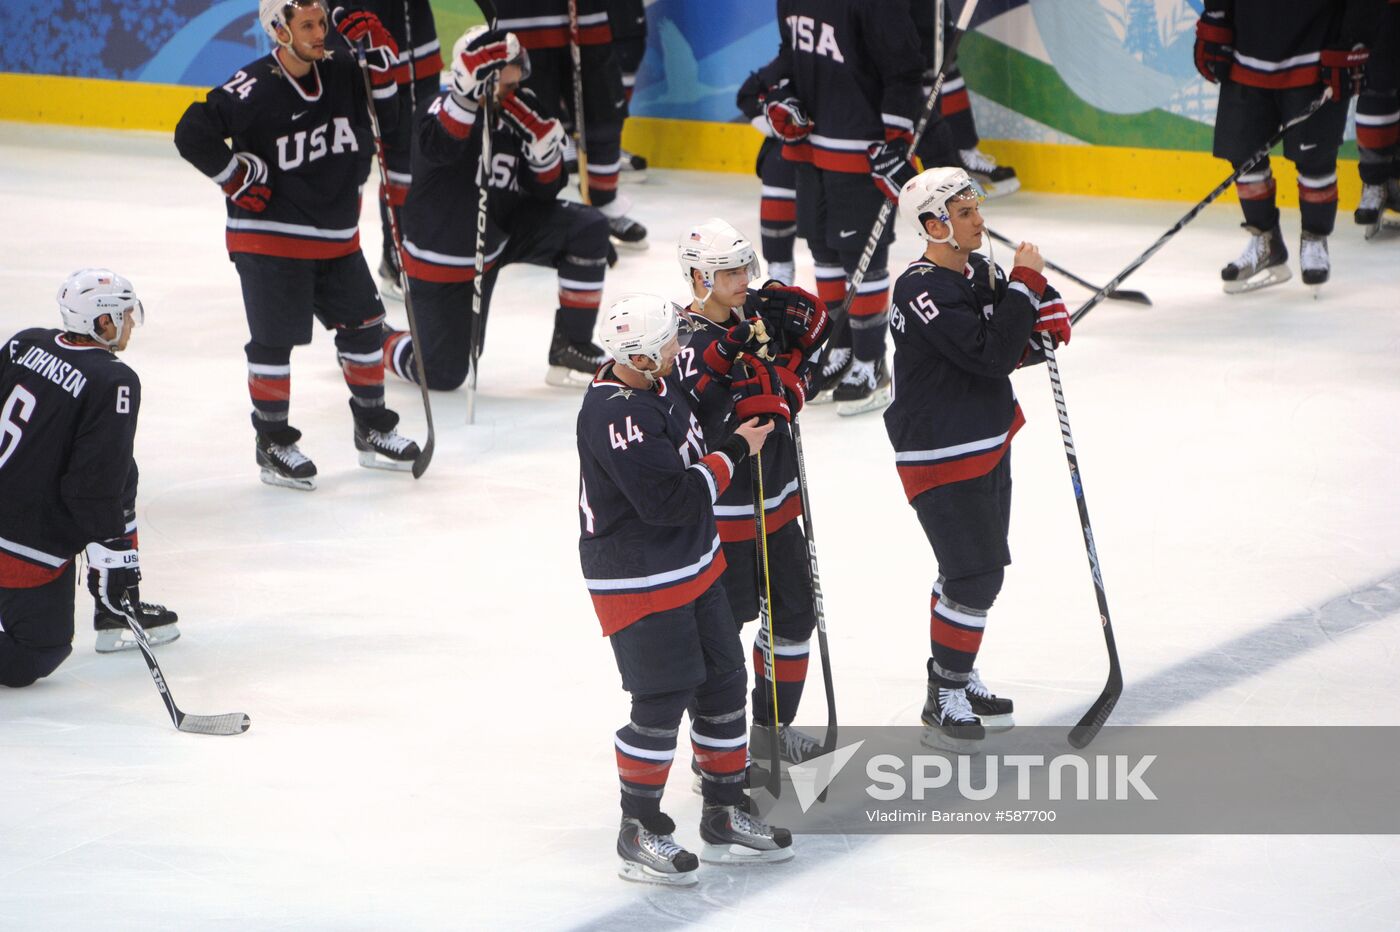 U.S. ice hockey team won silver medals